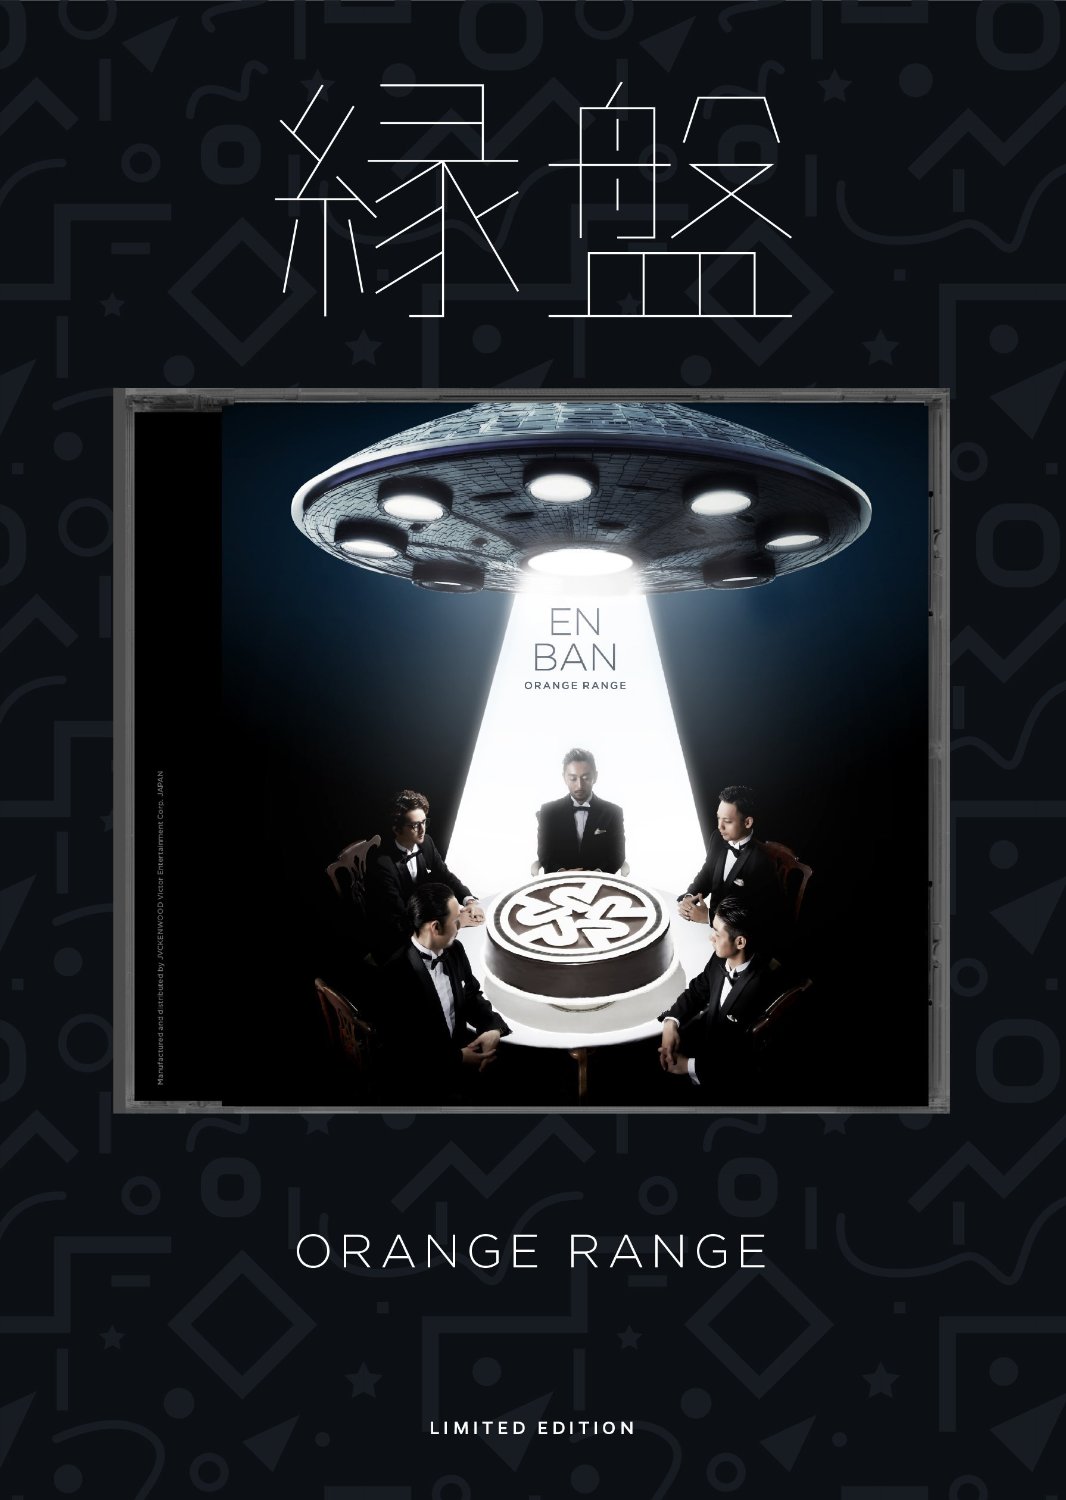 『Mステ』ORANGE RANGE名曲11年ぶり披露に「思い出が蘇る